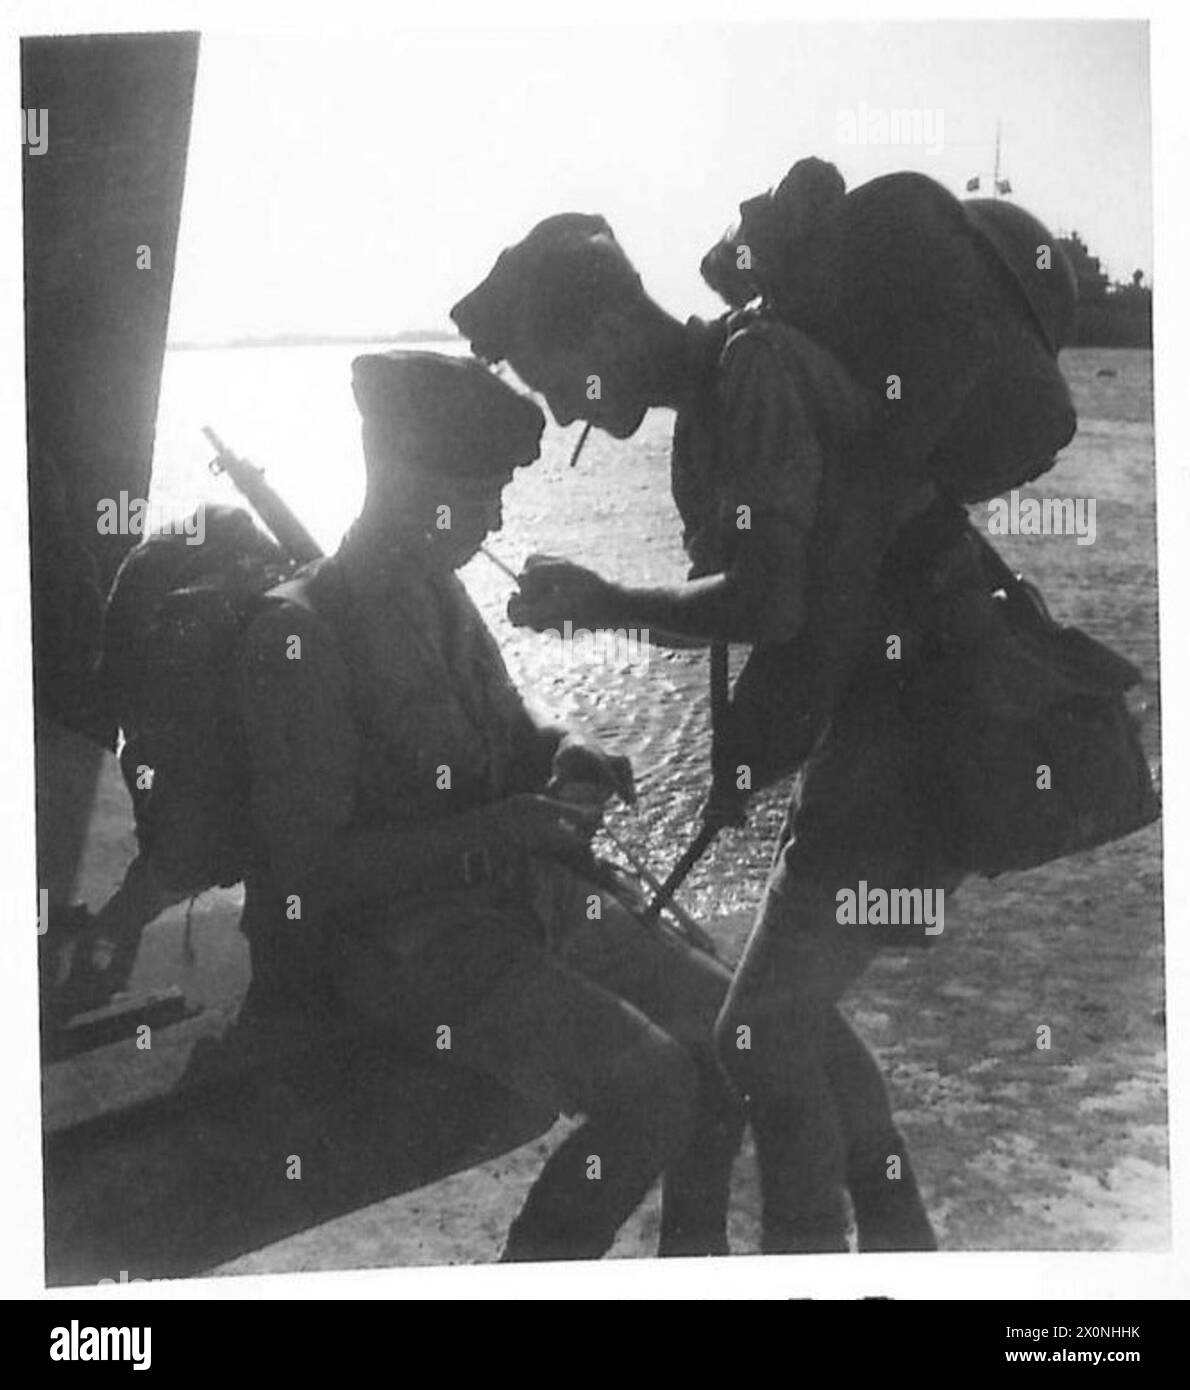 PREPARATIVI PER L'INVASIONE A TRIPOLI - le truppe sono state imbarcate a tutte le ore del giorno e della notte, qui due uomini sono visti godersi un'ultima sigaretta prima di un imbarco tardivo. Negativo fotografico, British Army Foto Stock